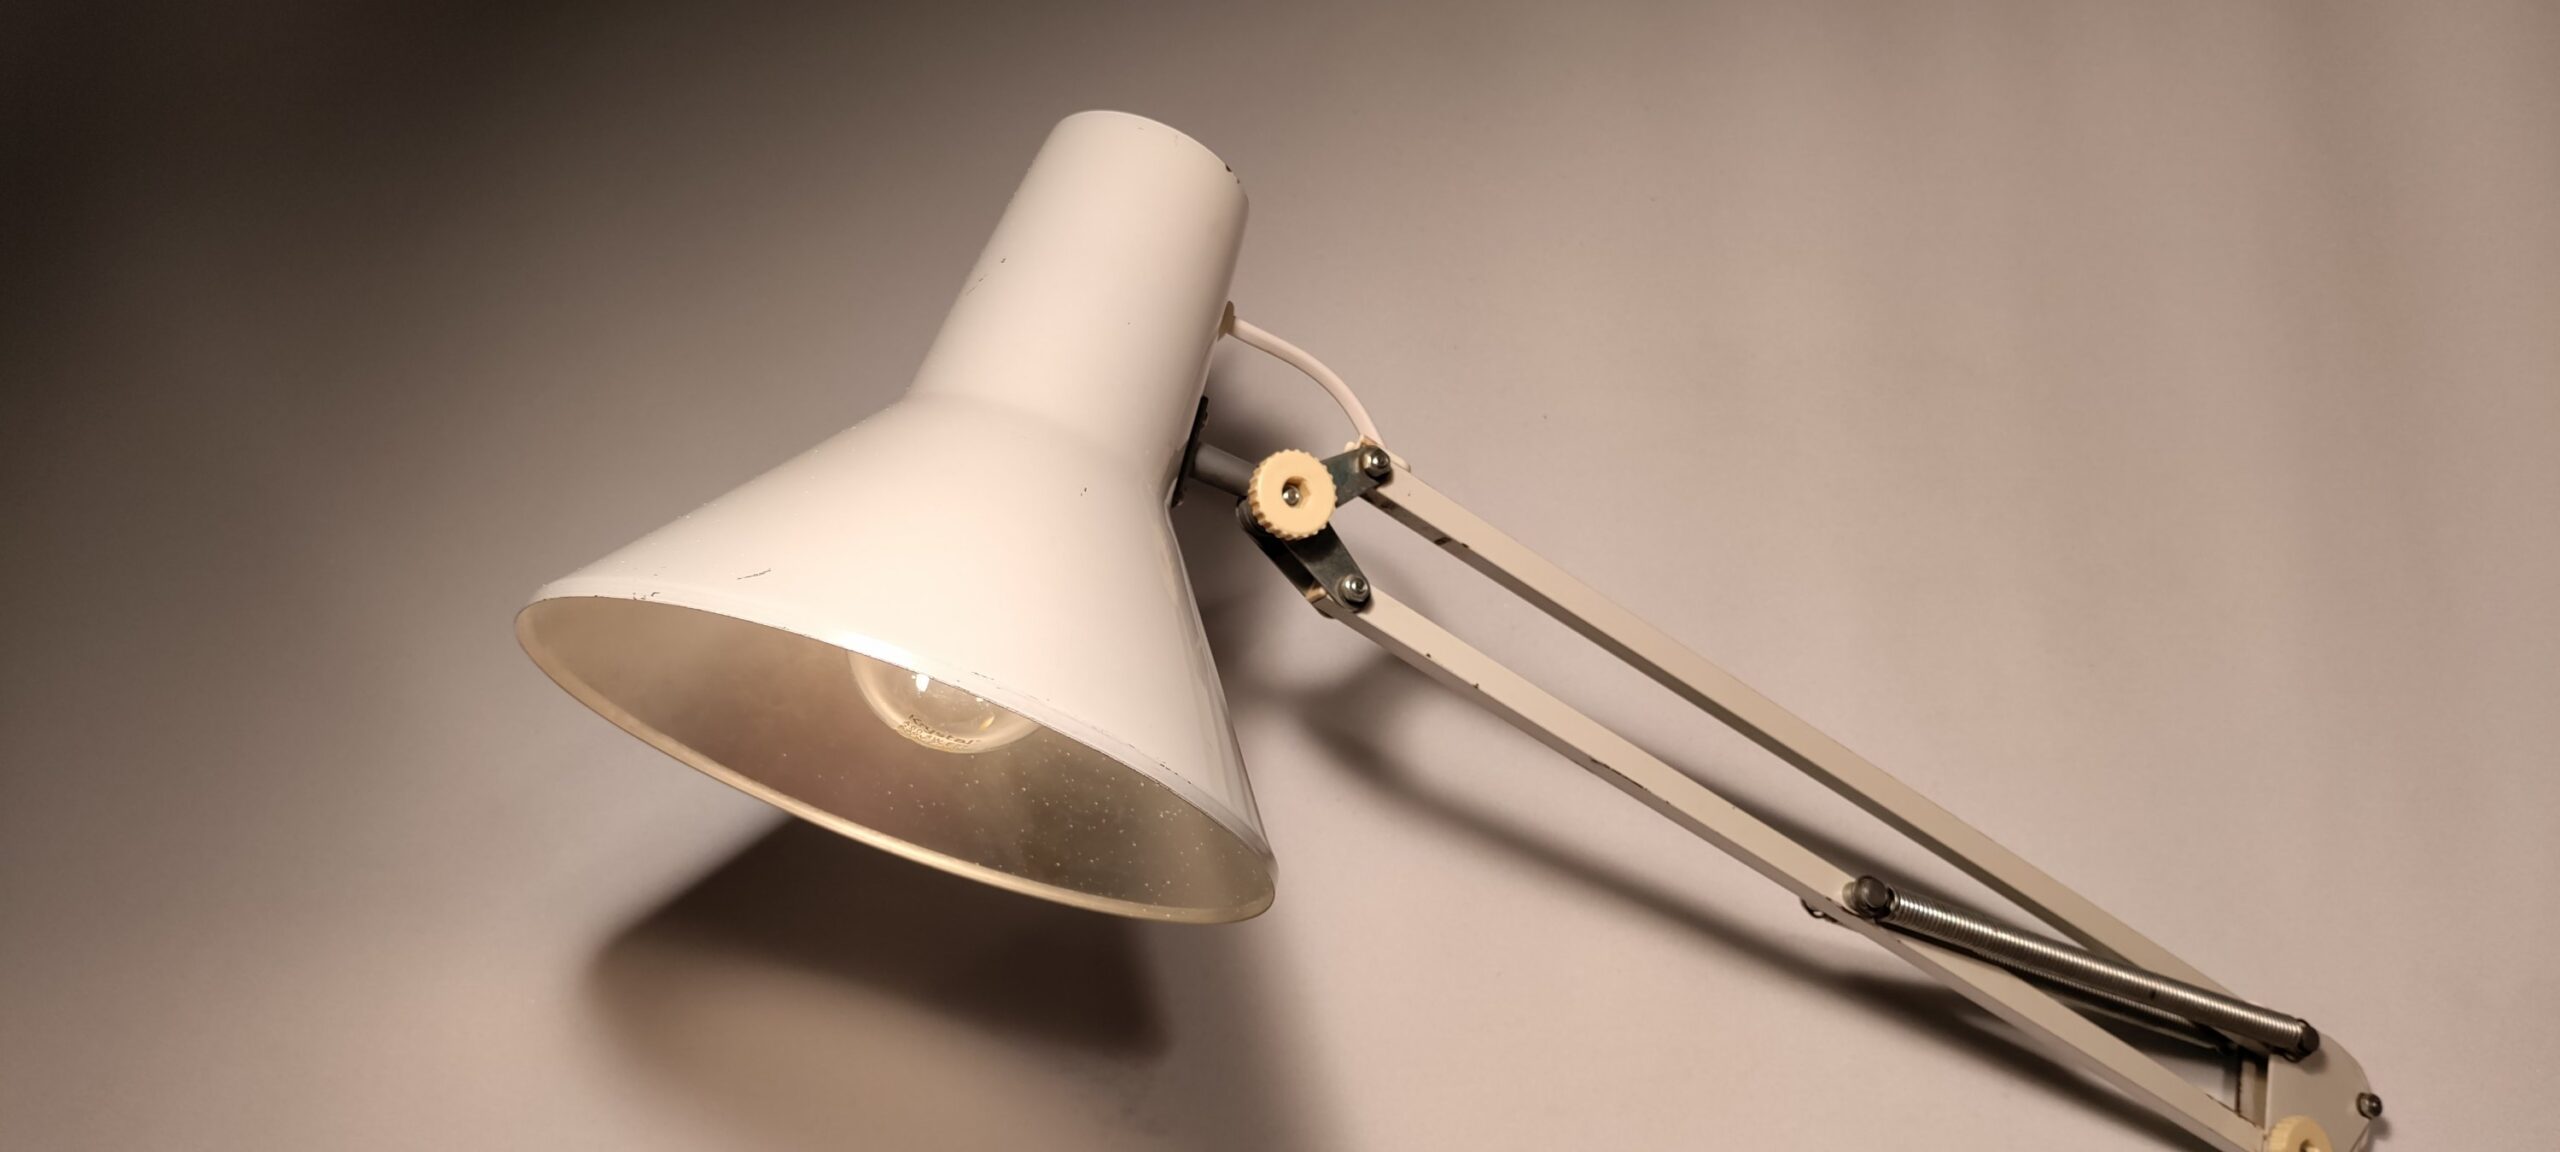 Smuk arkitektlampe fra LB - design med nyt el. 3 meter • Møllers smukkelamper.dk - Retro og vintage lamper og lampedele